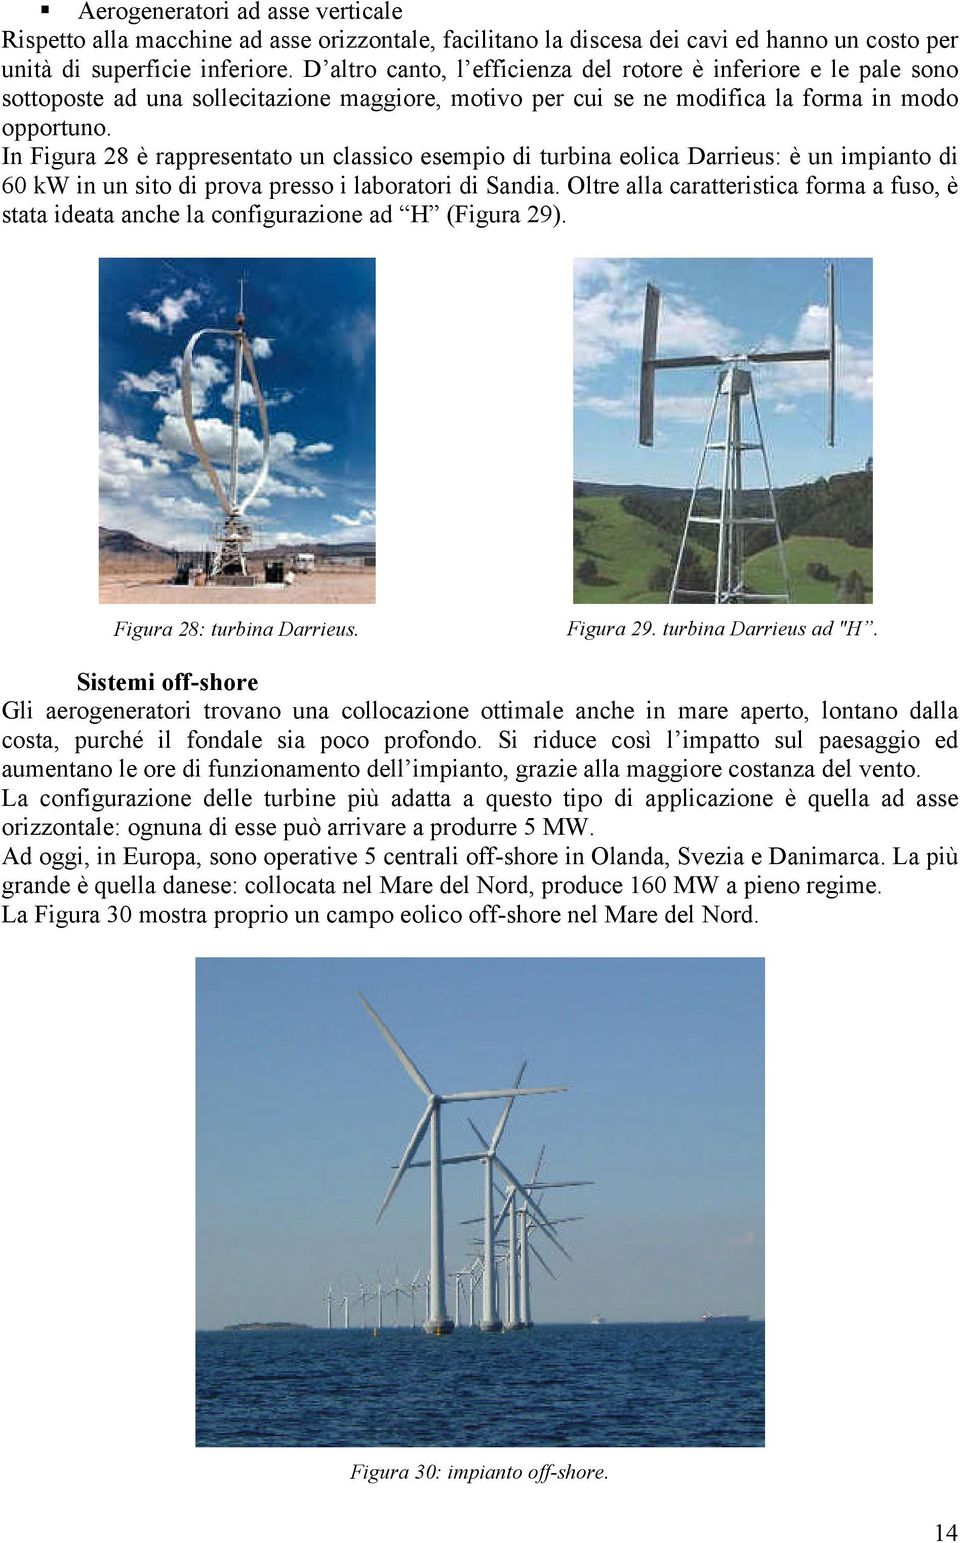 In Figura 8 è rappresentato un classico esempio di turbina eolica Darrieus: è un impianto di 60 kw in un sito di prova presso i laboratori di Sandia.